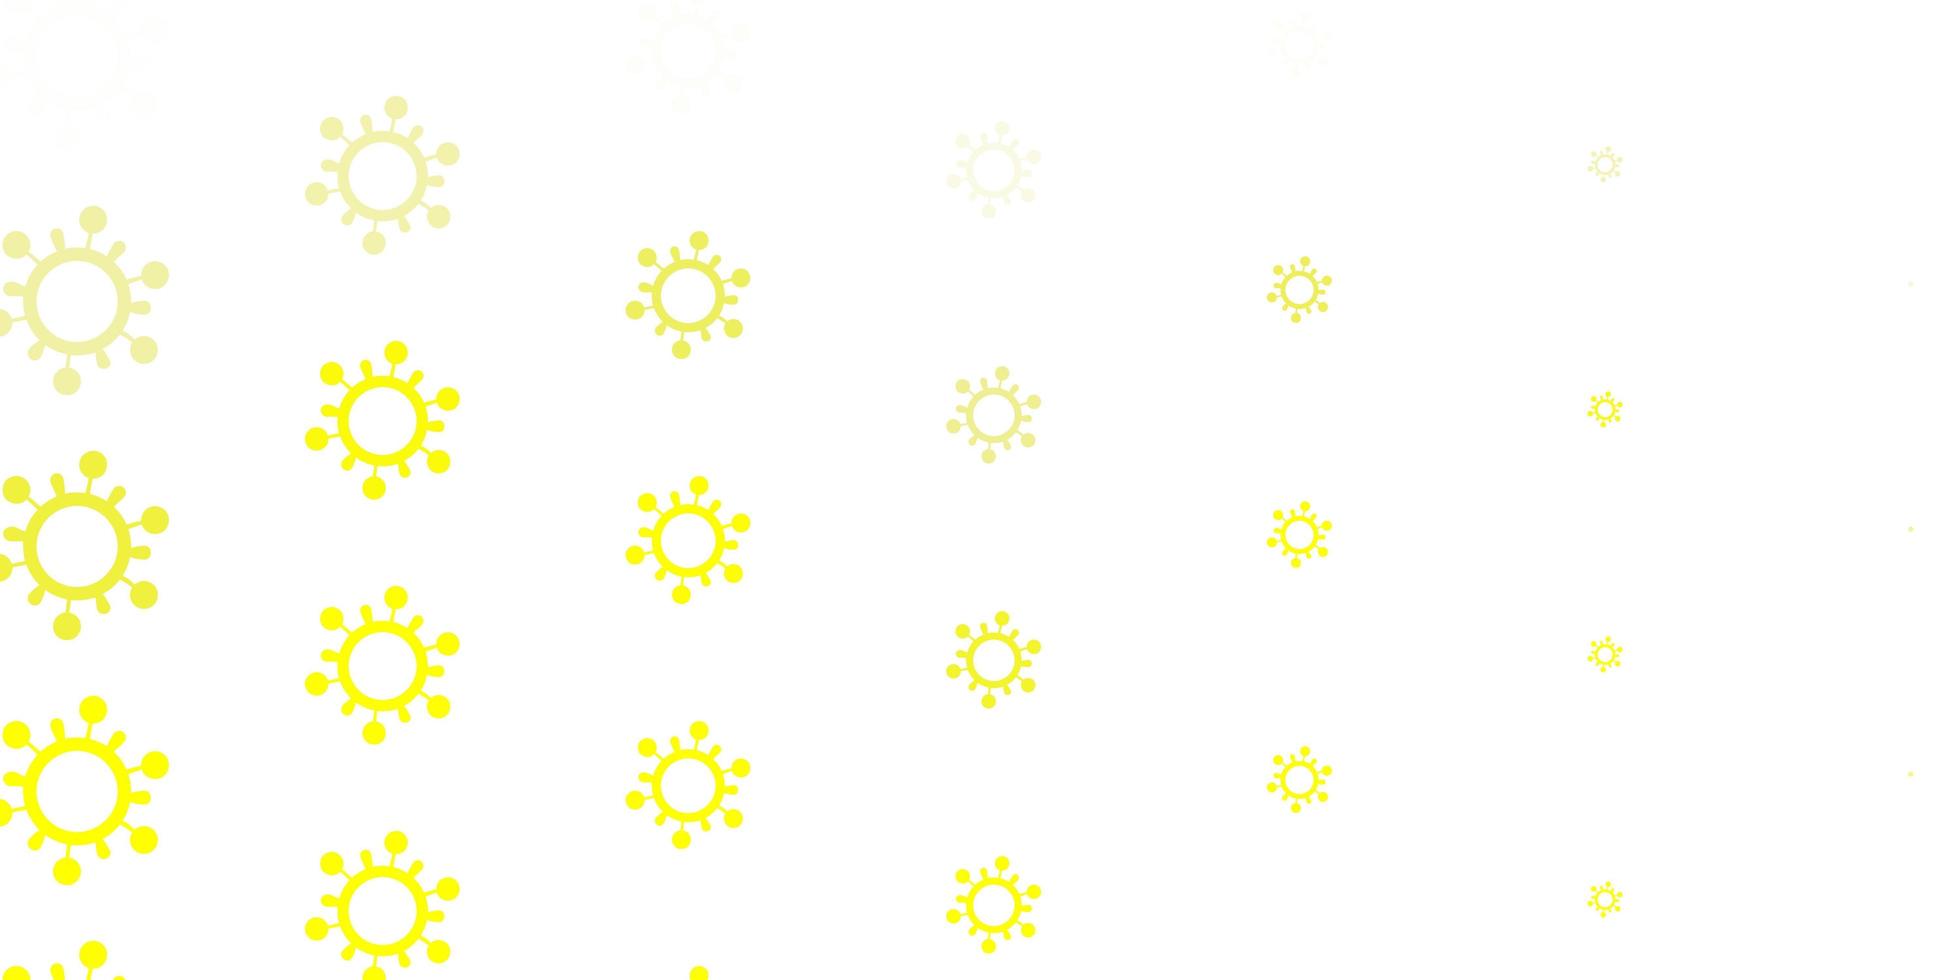 ljus gul vektor bakgrund med covid19 symboler